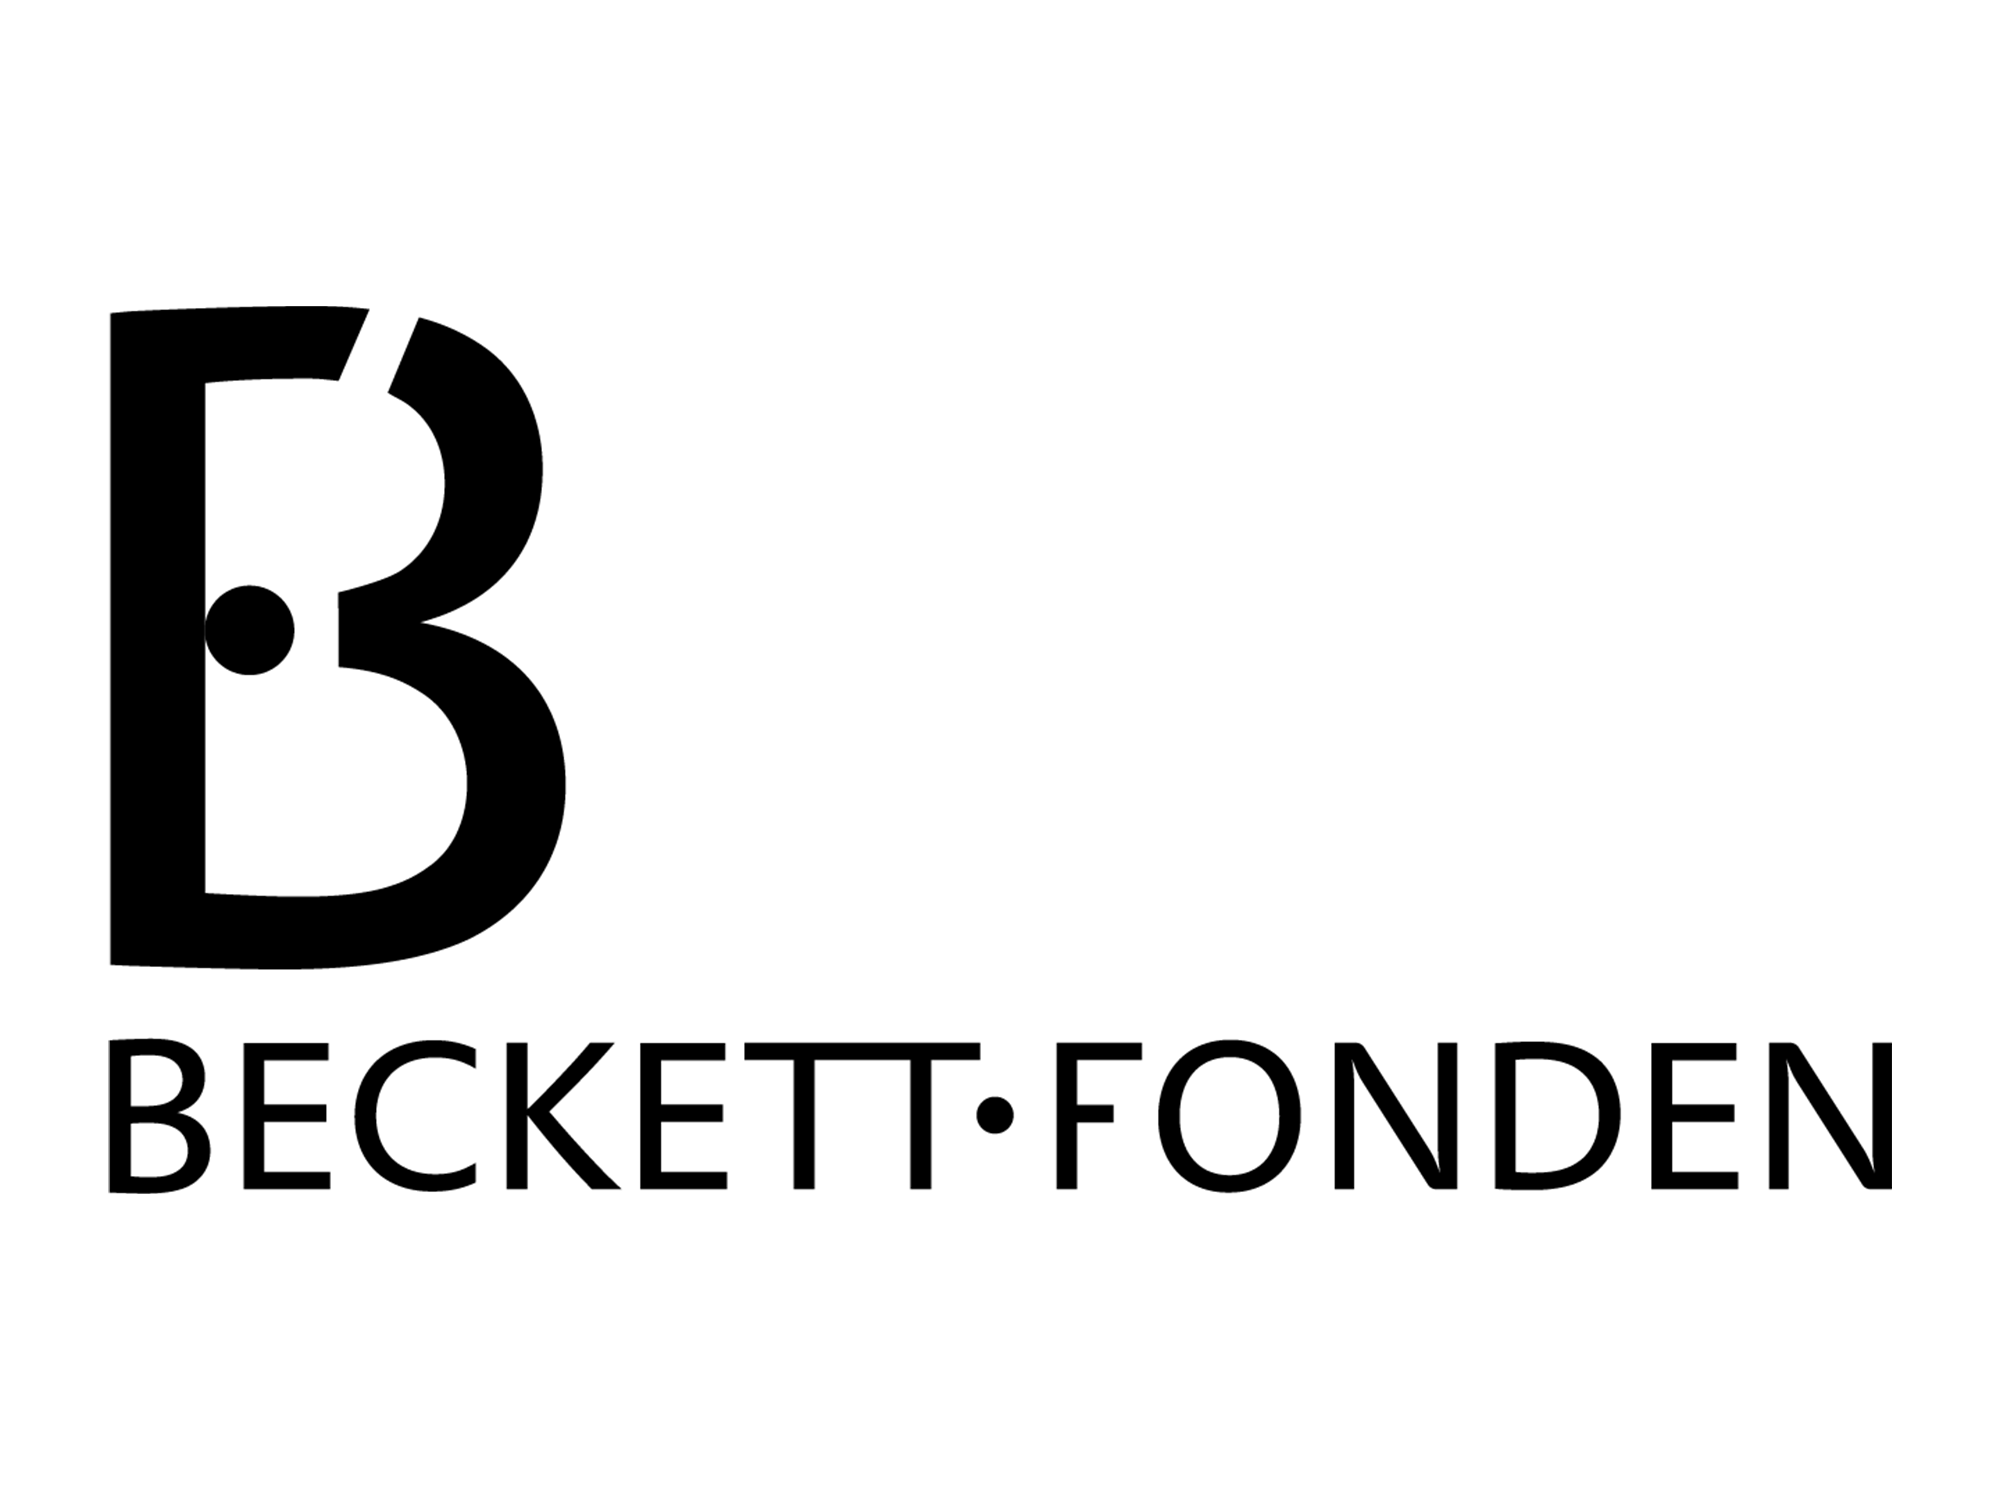 Becket Fonden logo